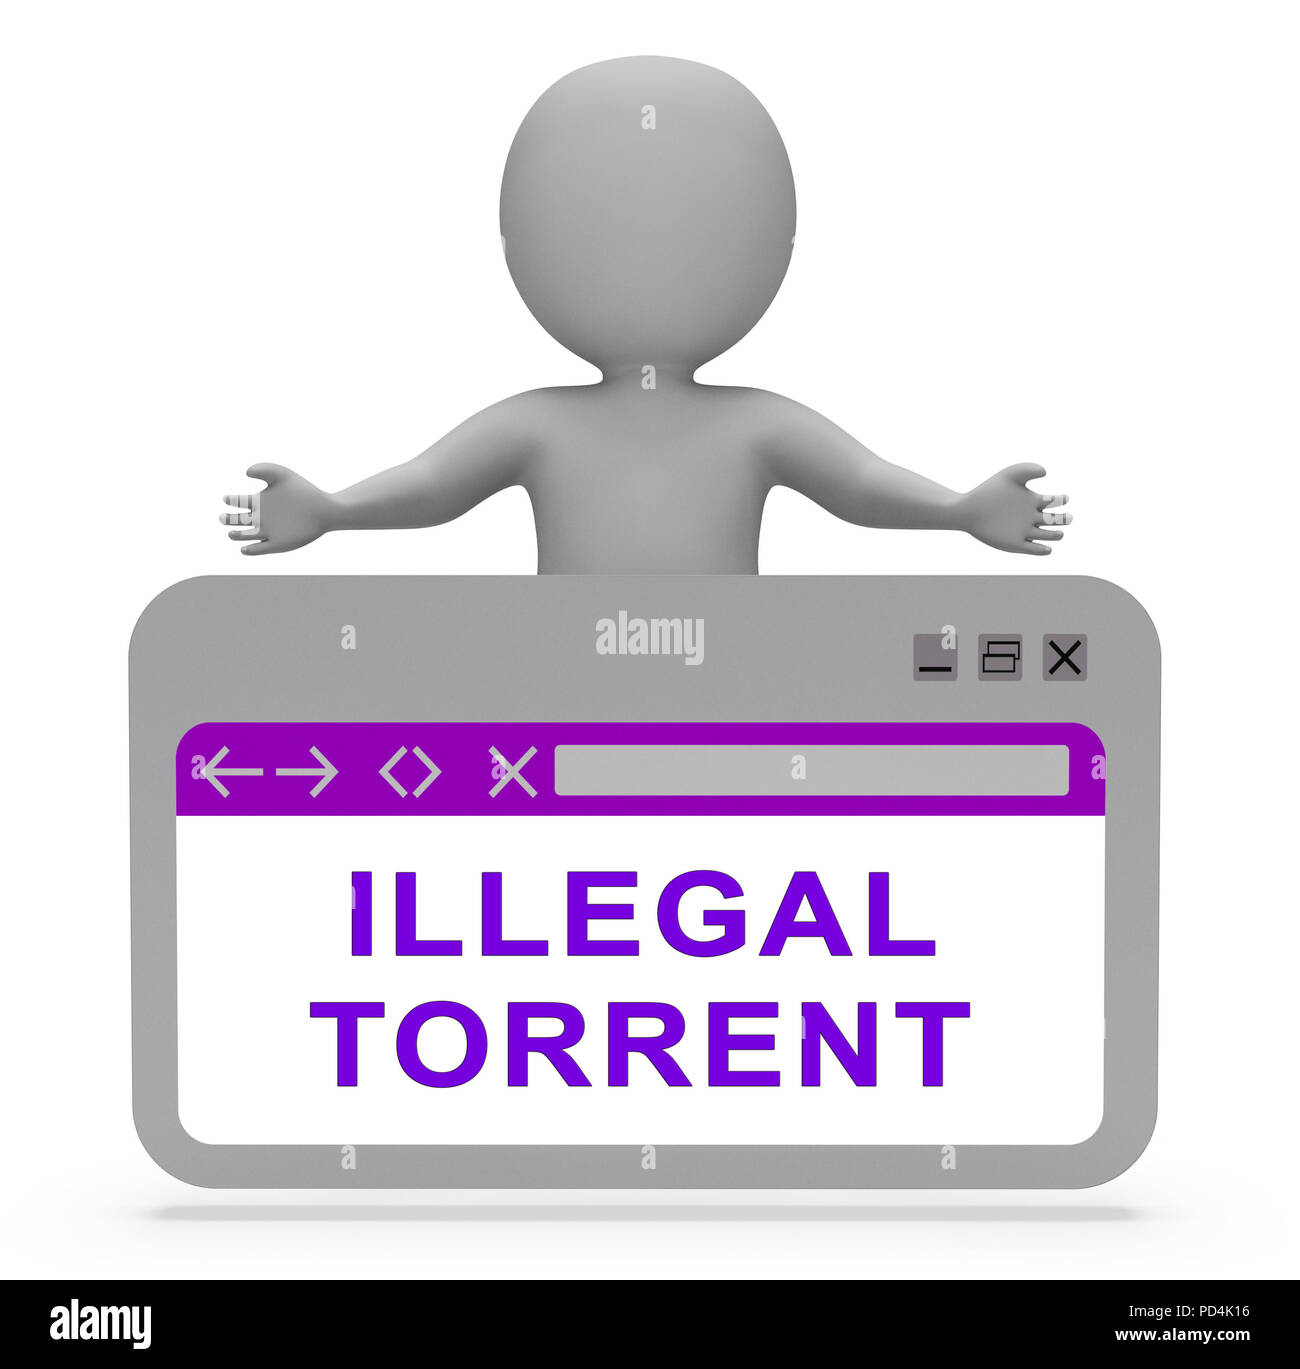 Torrent illégale de données illicites Télécharger le rendu 3D affiche les données de streaming P2p interdits en ligne Sites Serveur Banque D'Images